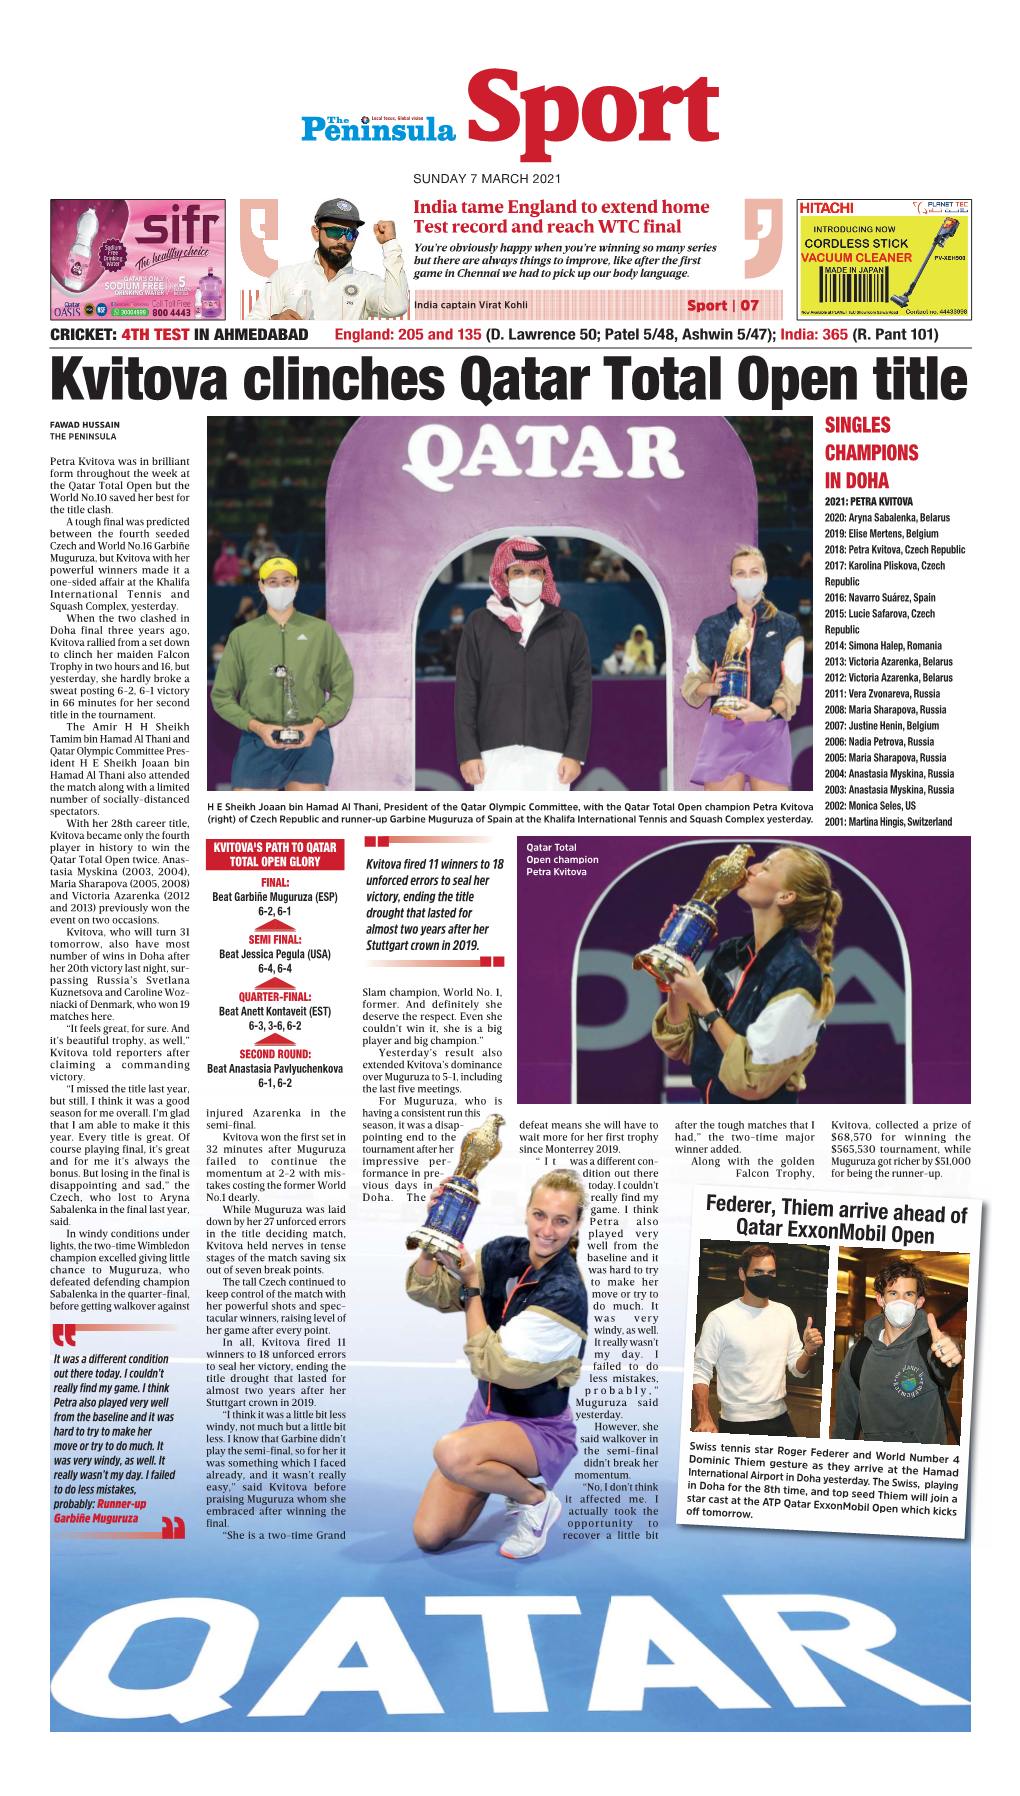 Kvitova Clinches Qatar Total Open Title